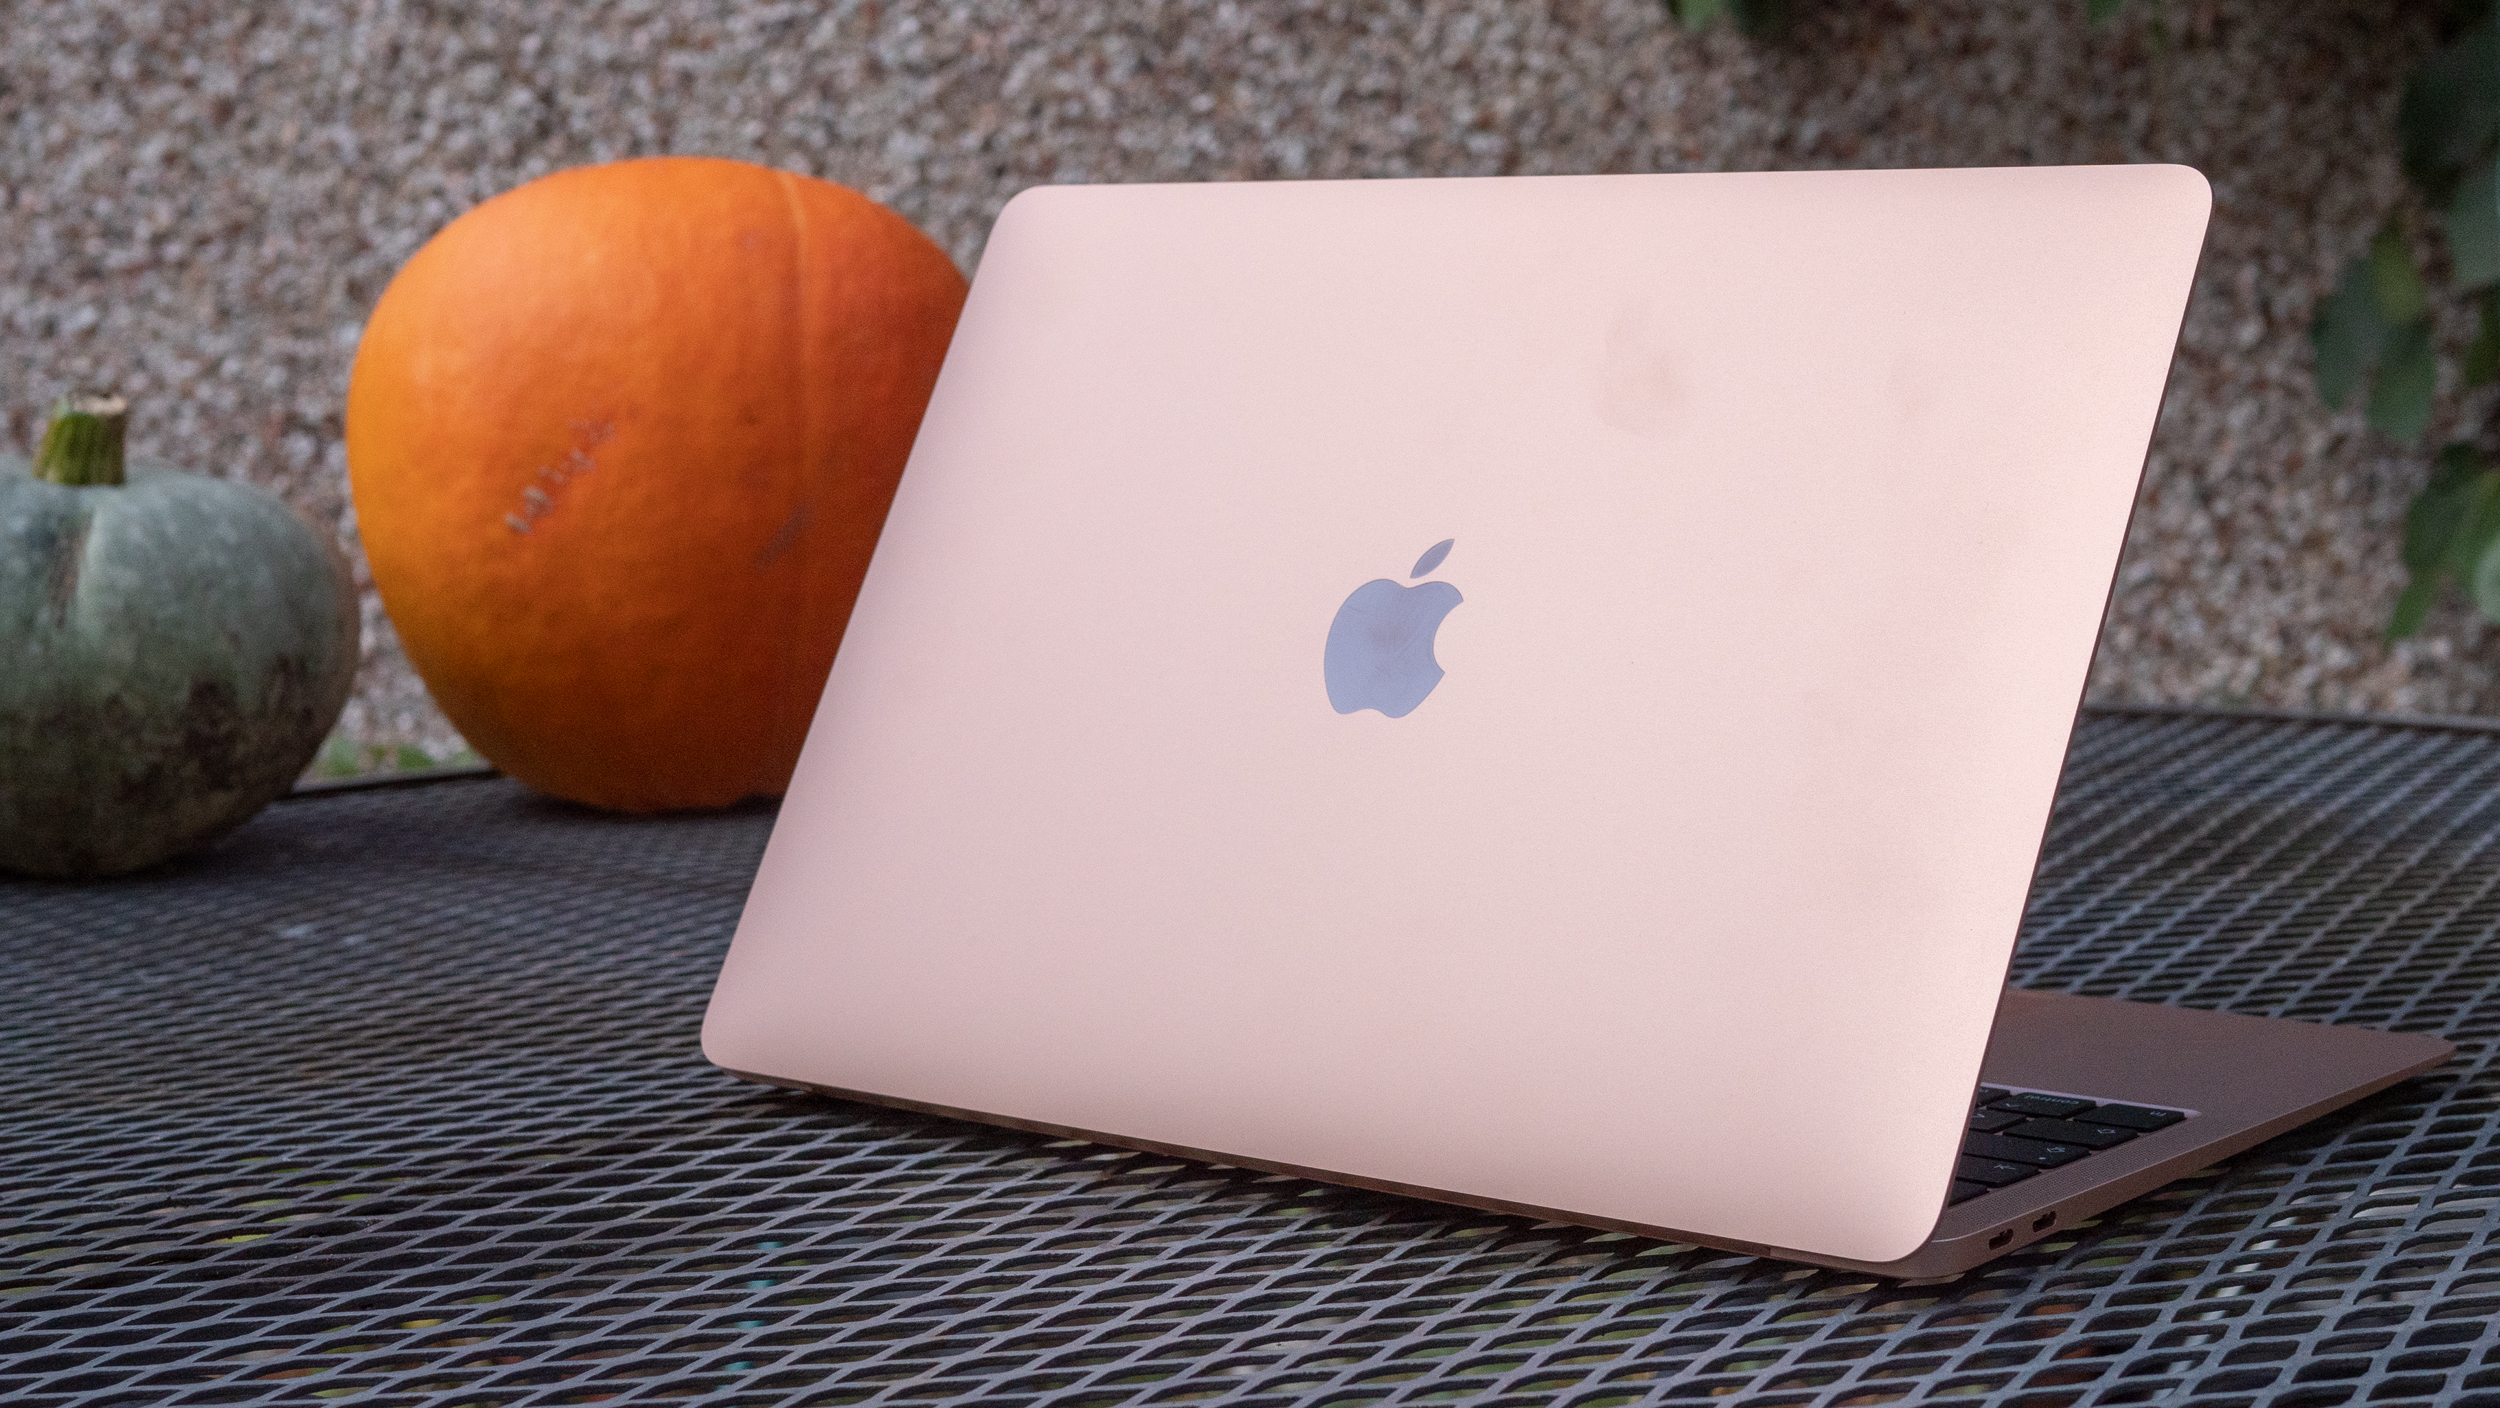 Apple MacBook Air review (M1)